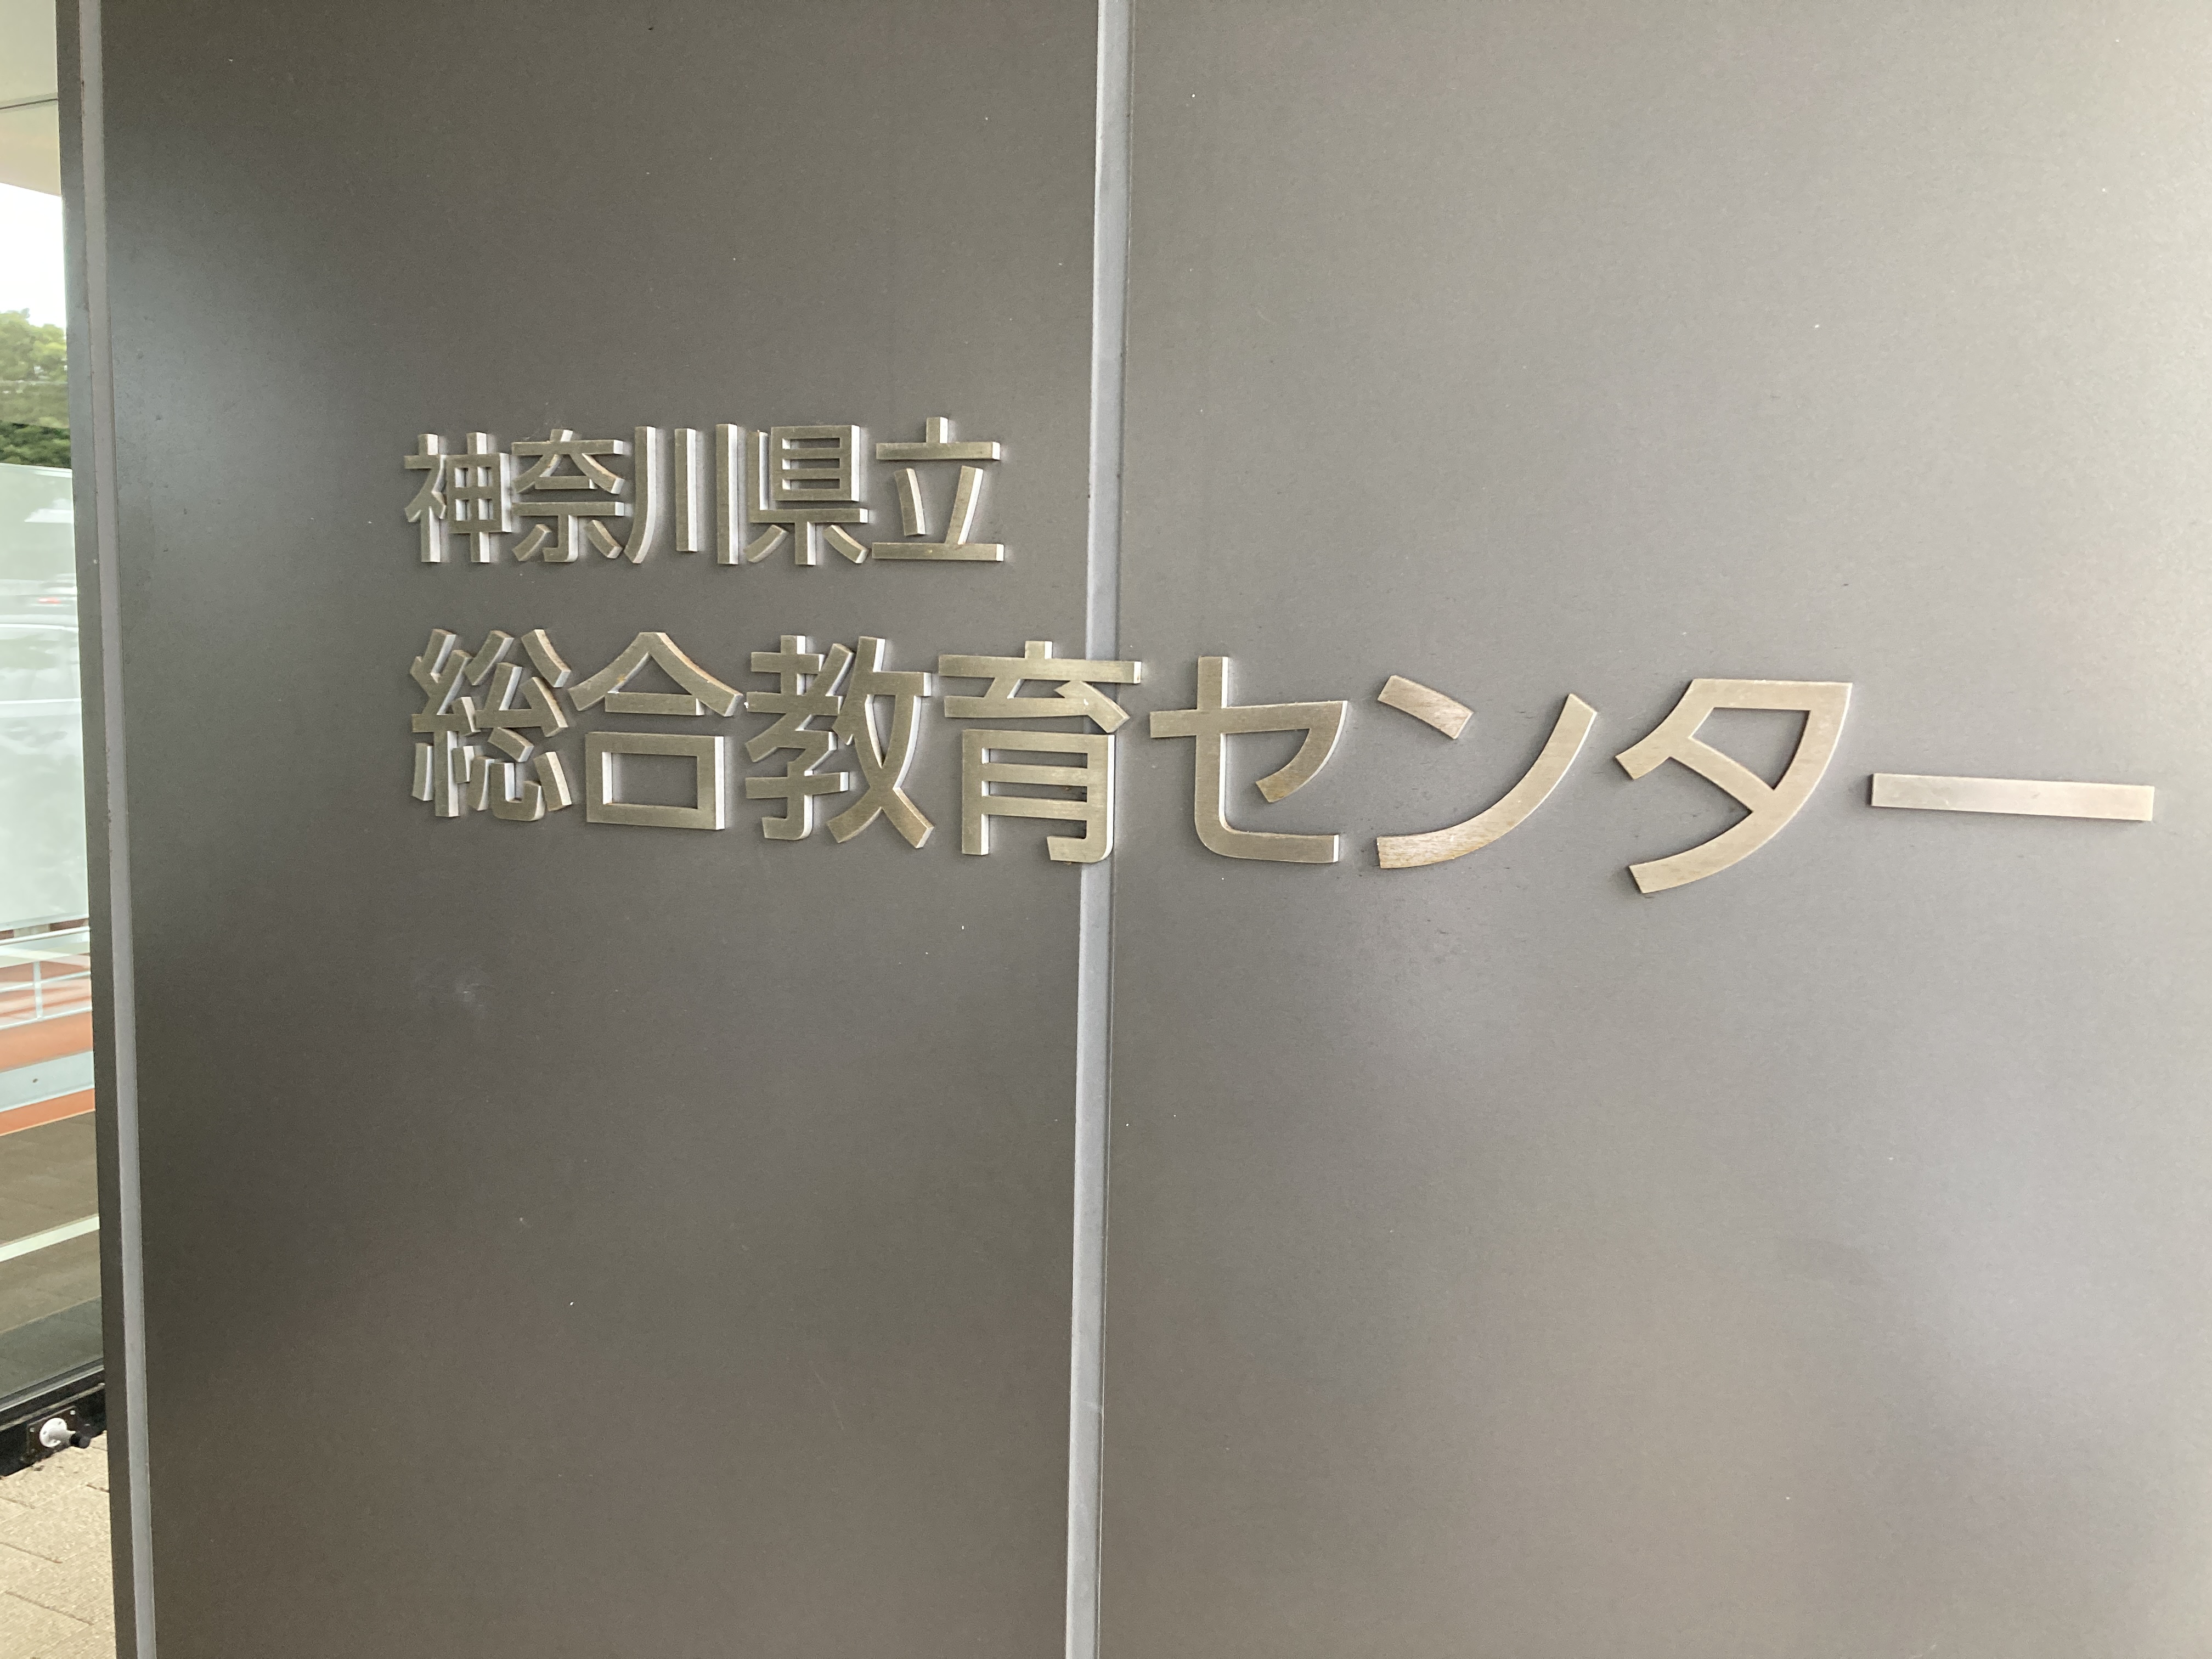 神奈川県立総合教育センターにてセミナー開催しました